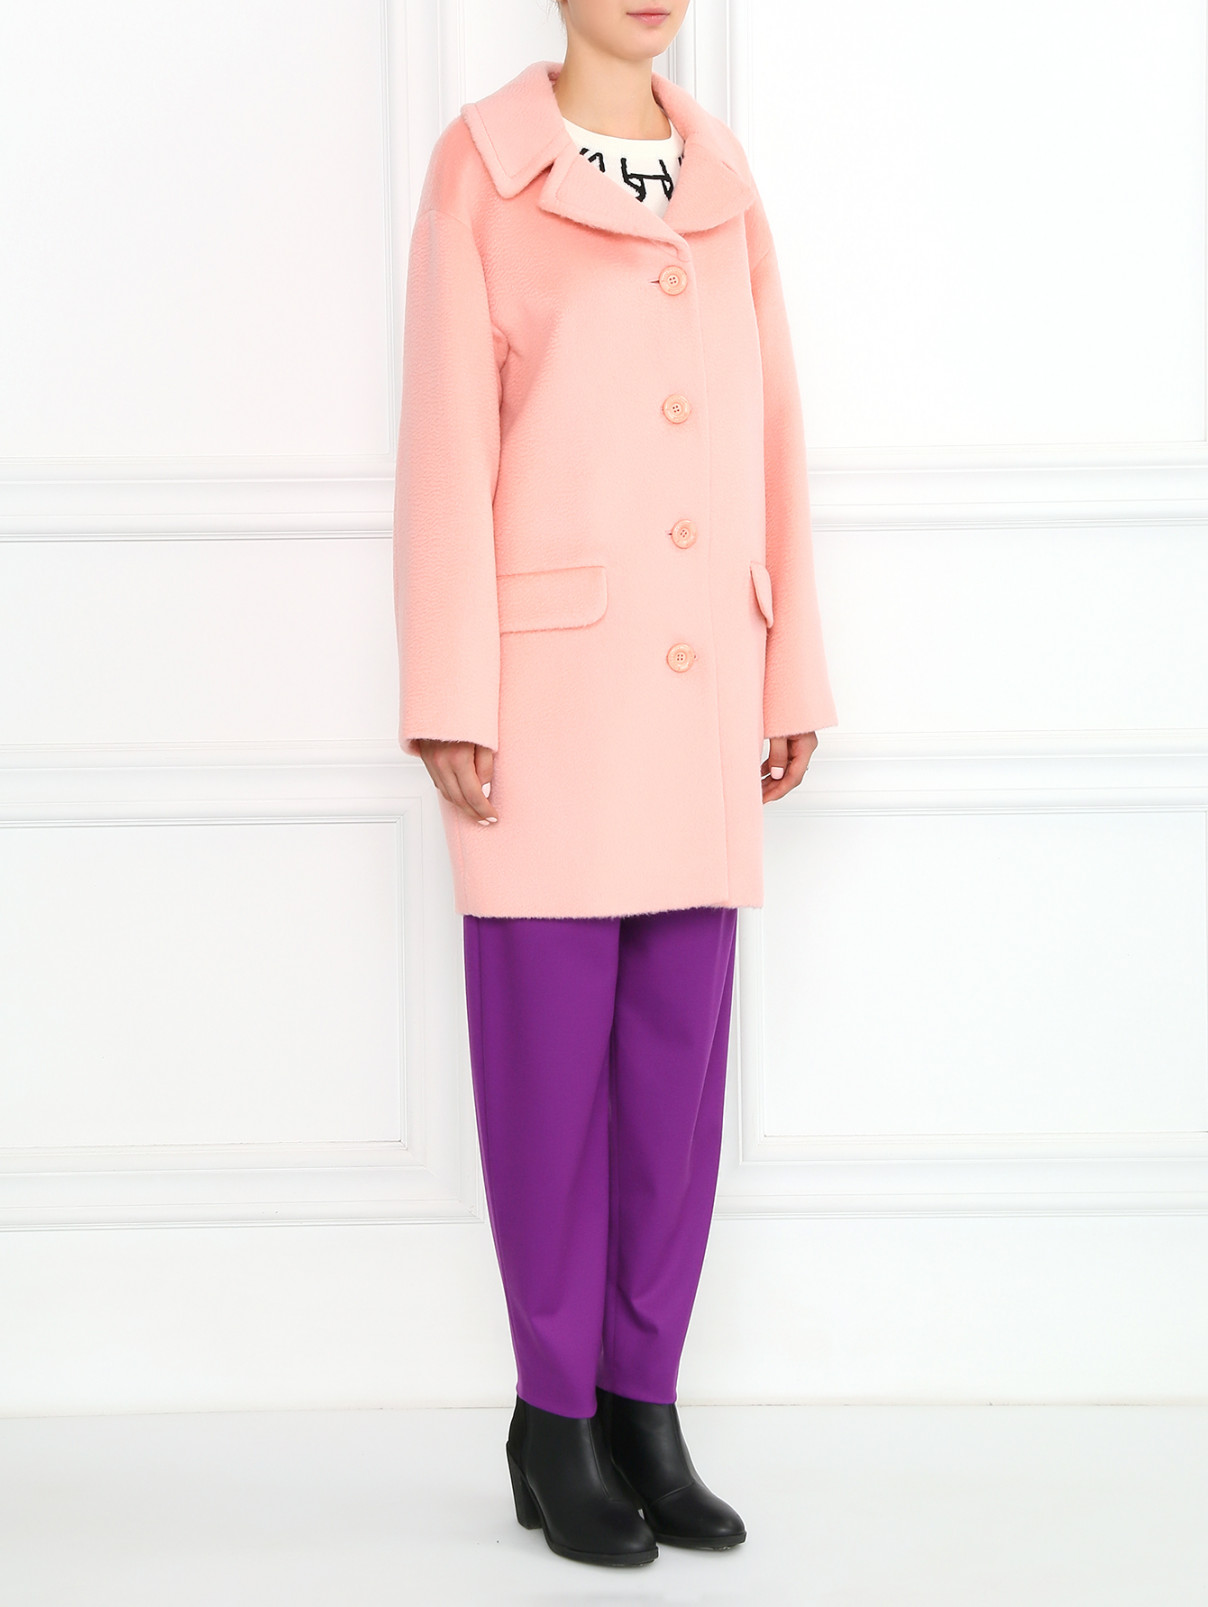 Однобортное пальто из шерсти и мохера Moschino Boutique  –  Модель Общий вид  – Цвет:  Розовый